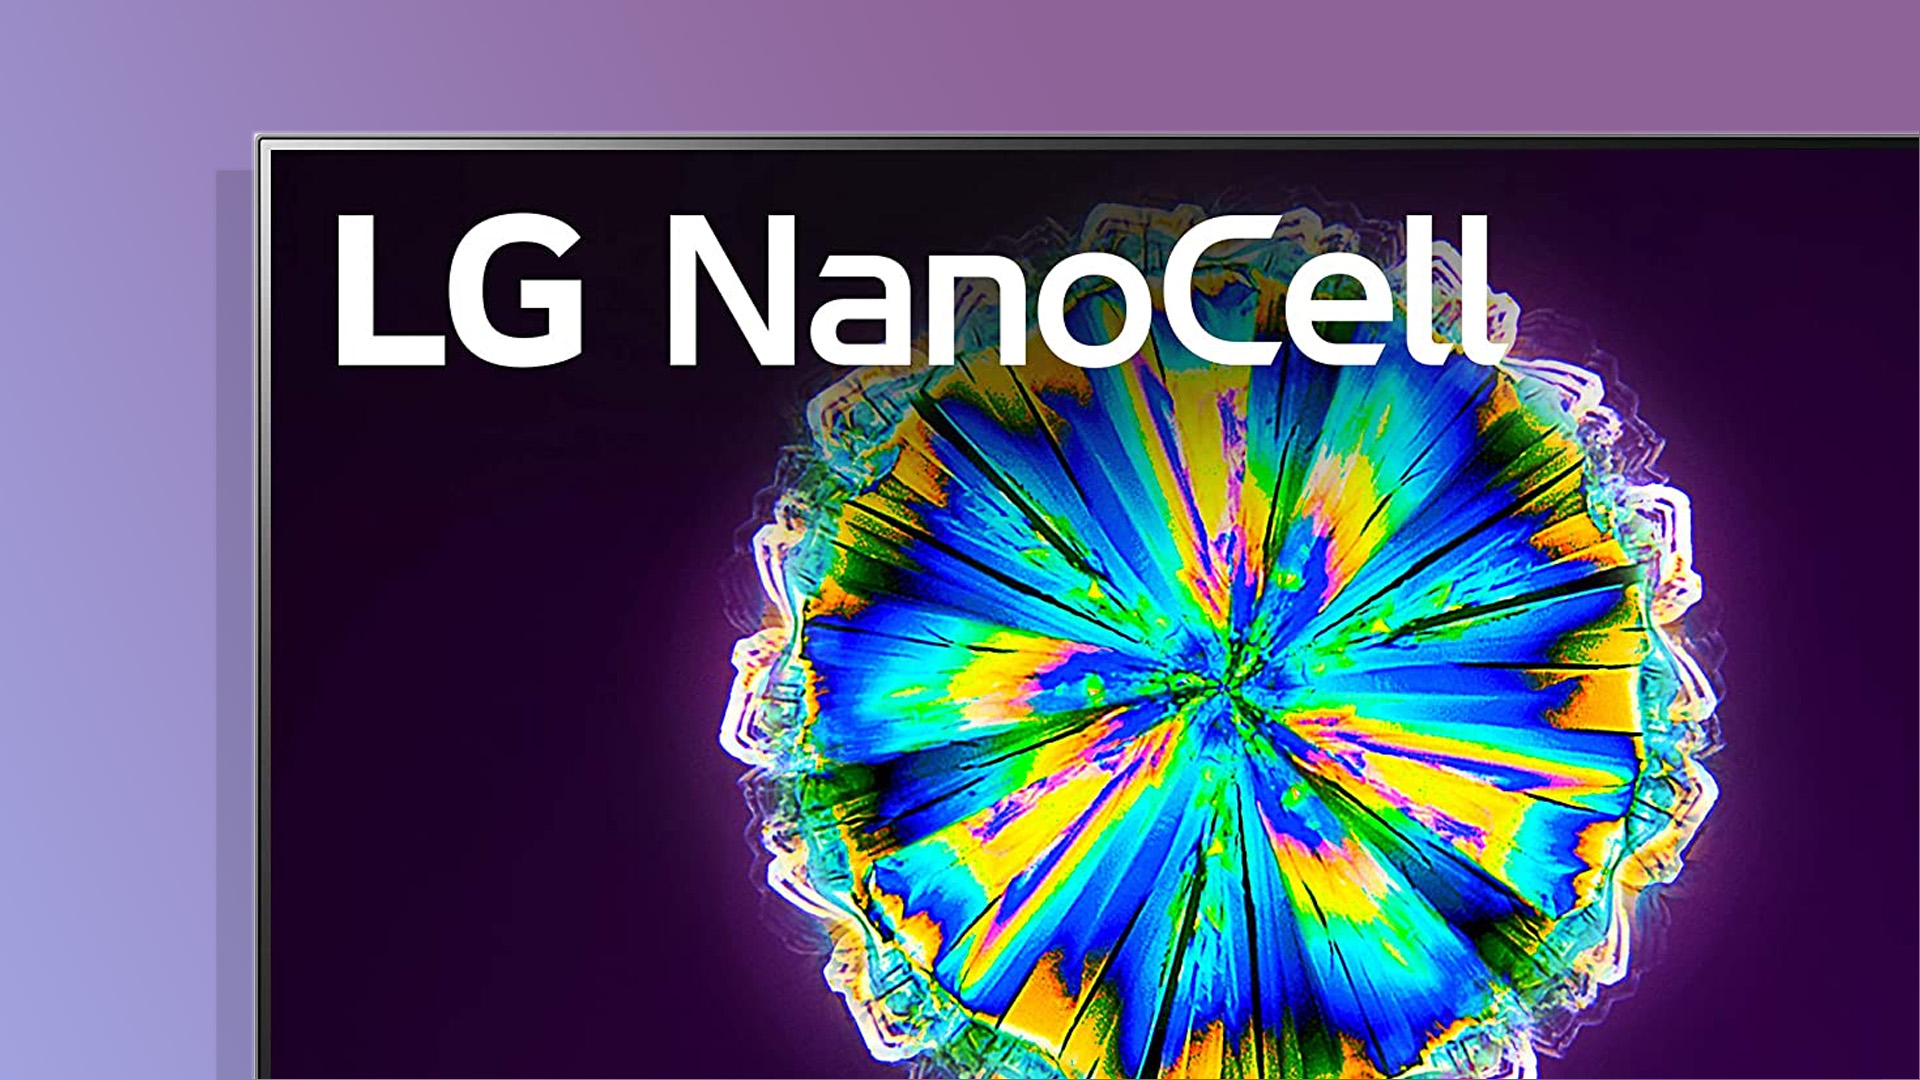 TV LED 65'' LG NanoCell 65NANO756PA 4K UHD HDR Smart TV - TV LED